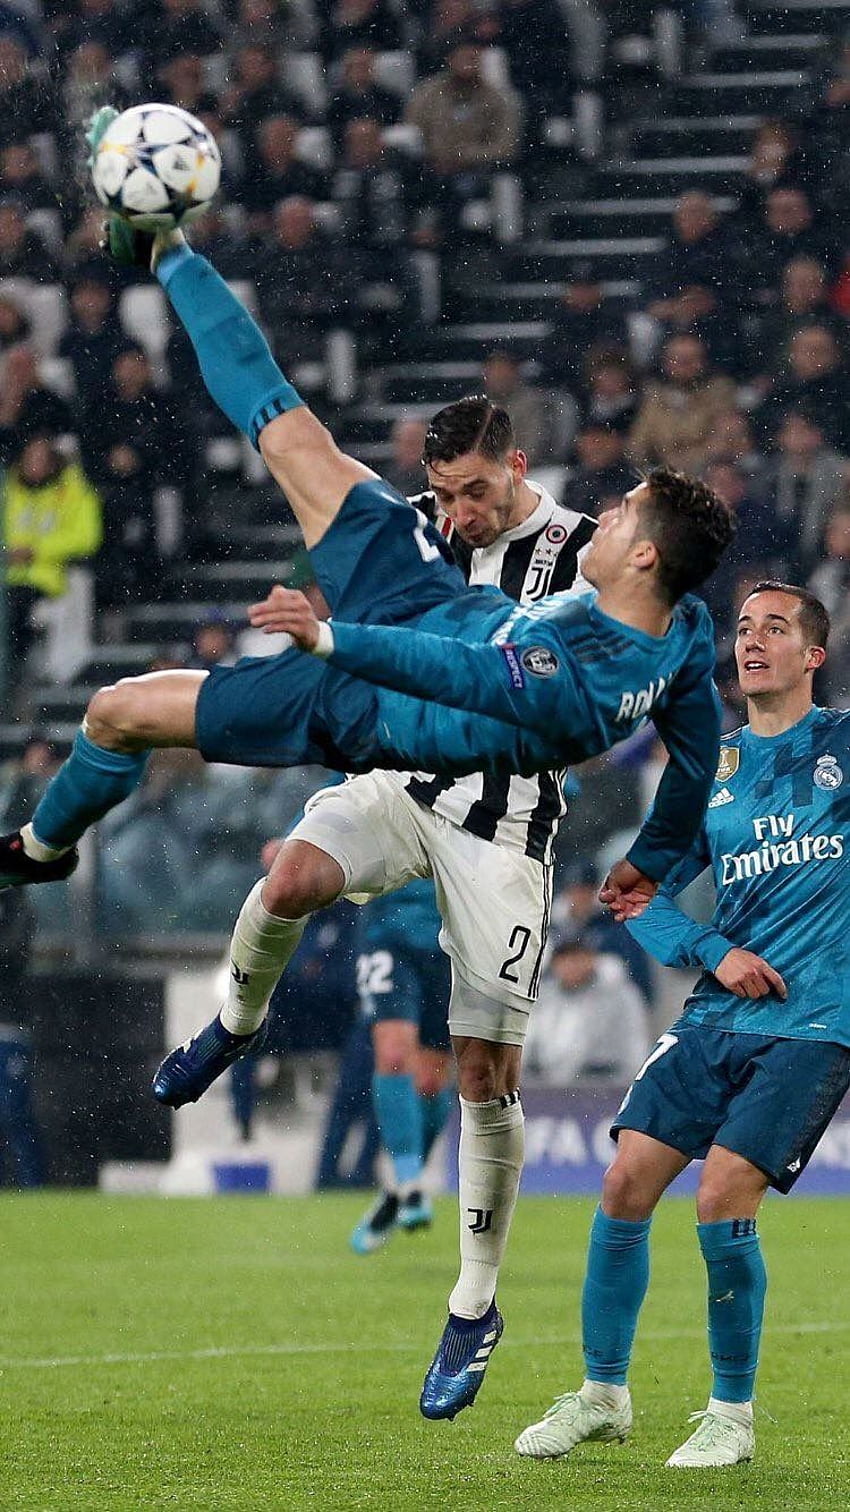 Zapierające dech w piersiach kopnięcie Ronaldo z przewrotki przeciwko Juventusowi, po którym nastąpiło przytłaczające zwycięstwo. Gole Ronaldo, Cristiano Ronaldo Juventus, Piłka nożna Ronaldo, Gol Cristiano Ronaldo Tapeta na telefon HD